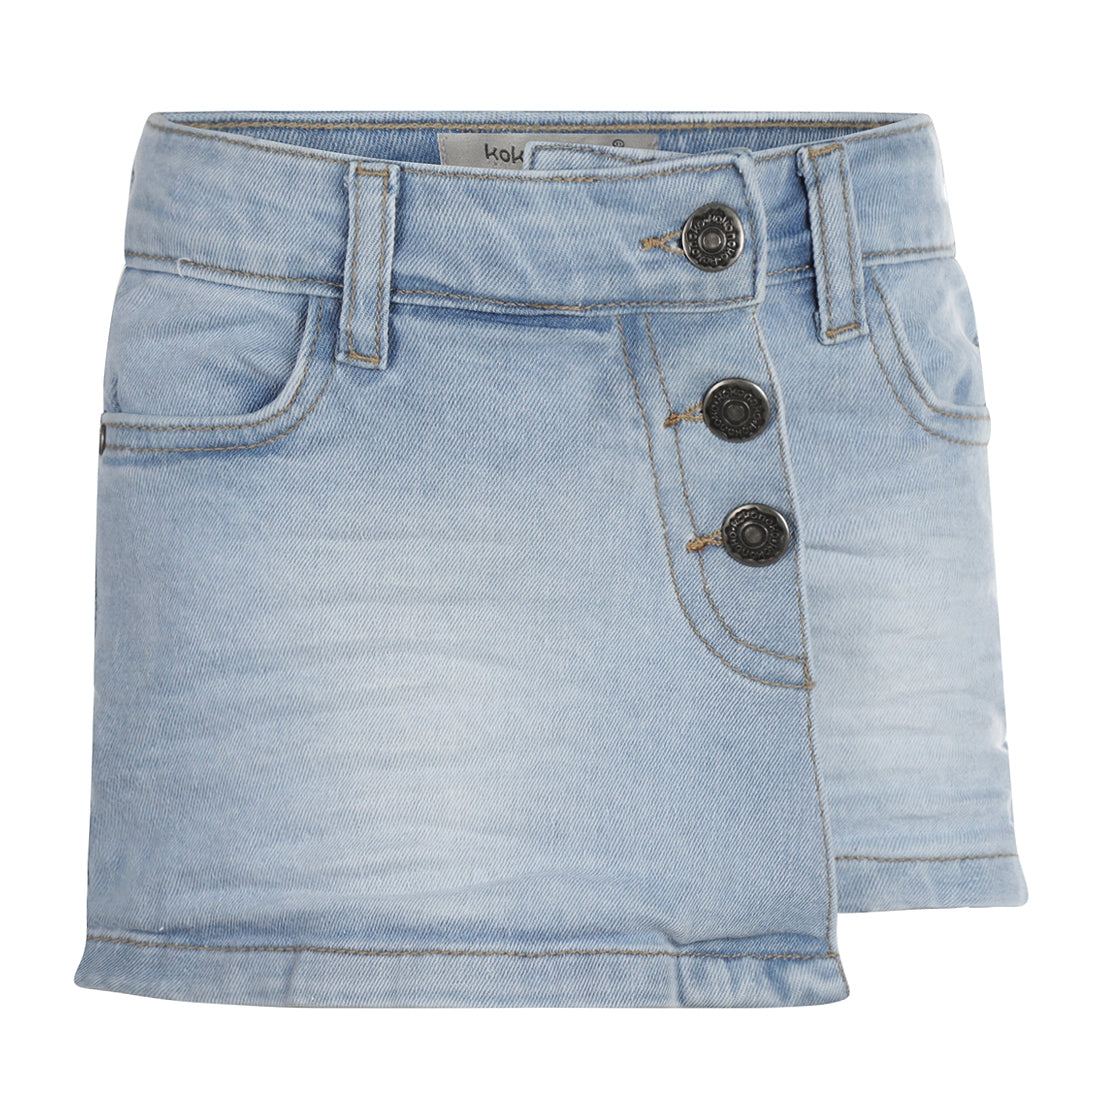 Meisjes Jeans skort van Koko Noko in de kleur Blue jeans in maat 128.